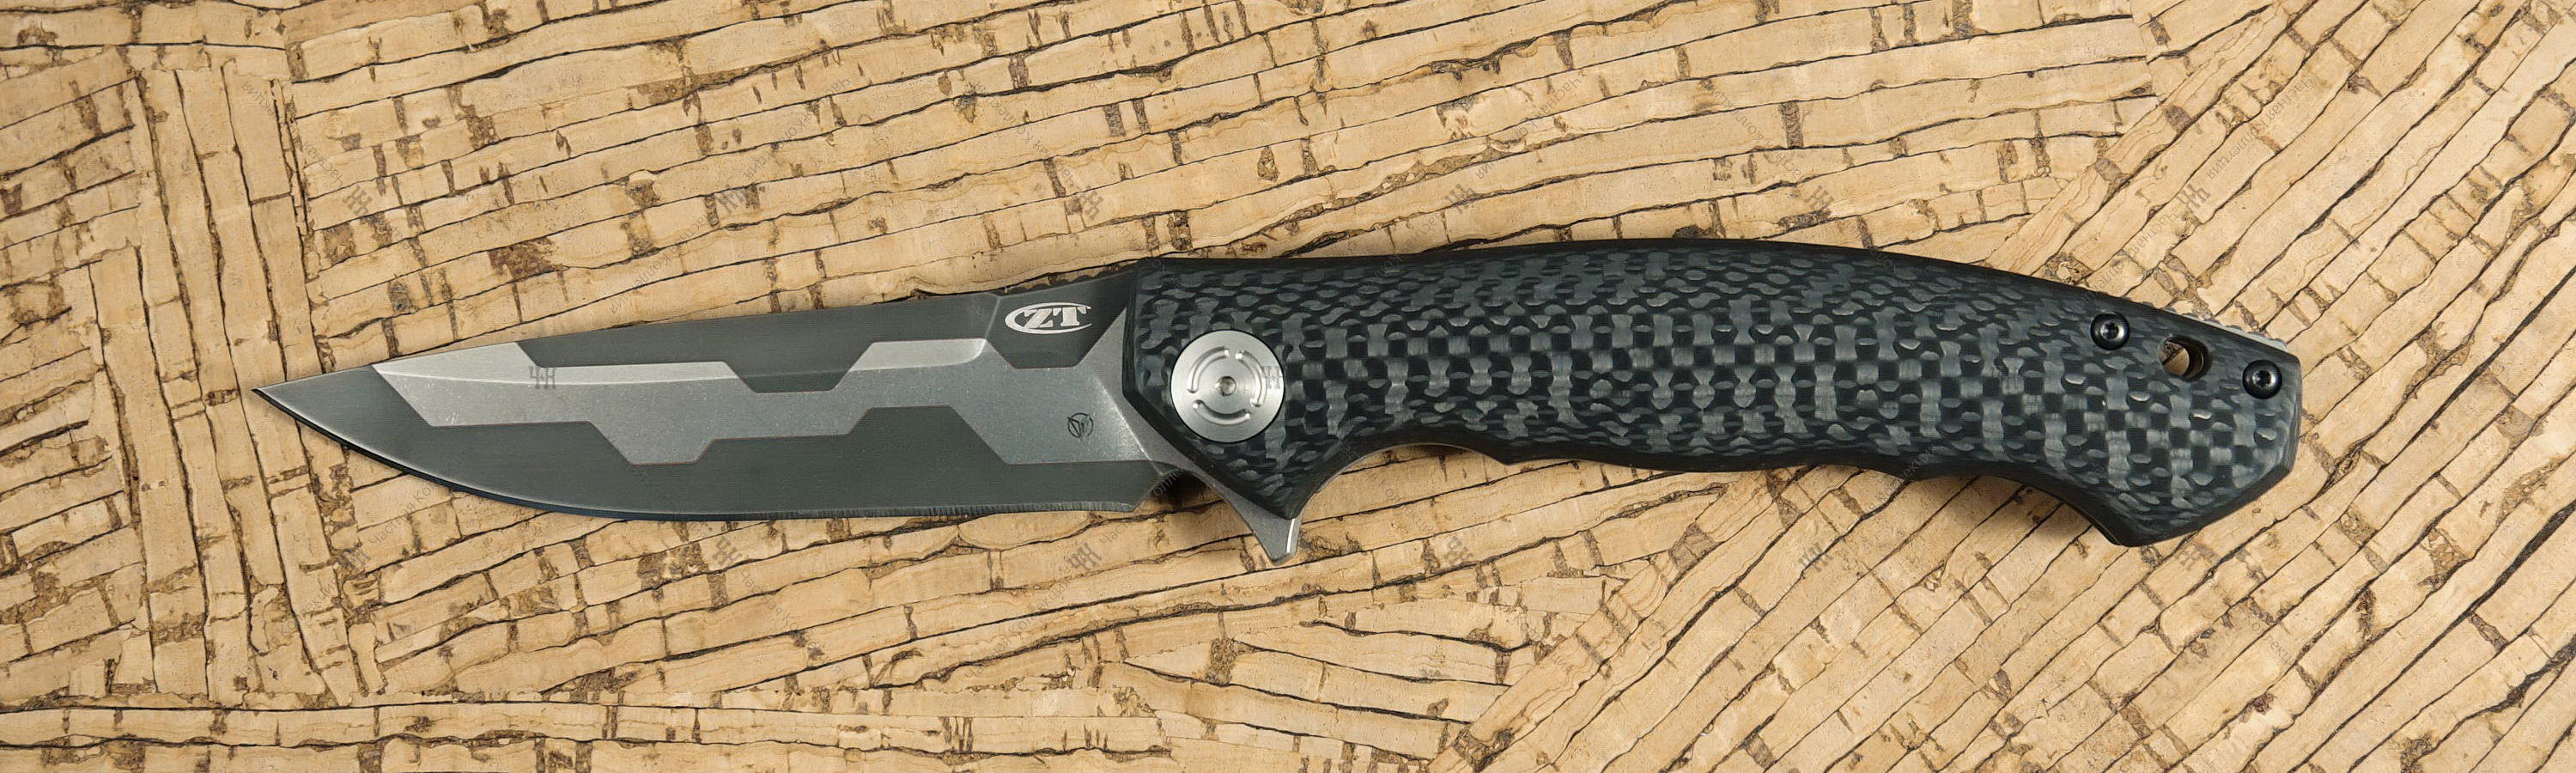 ZT 0454 knife